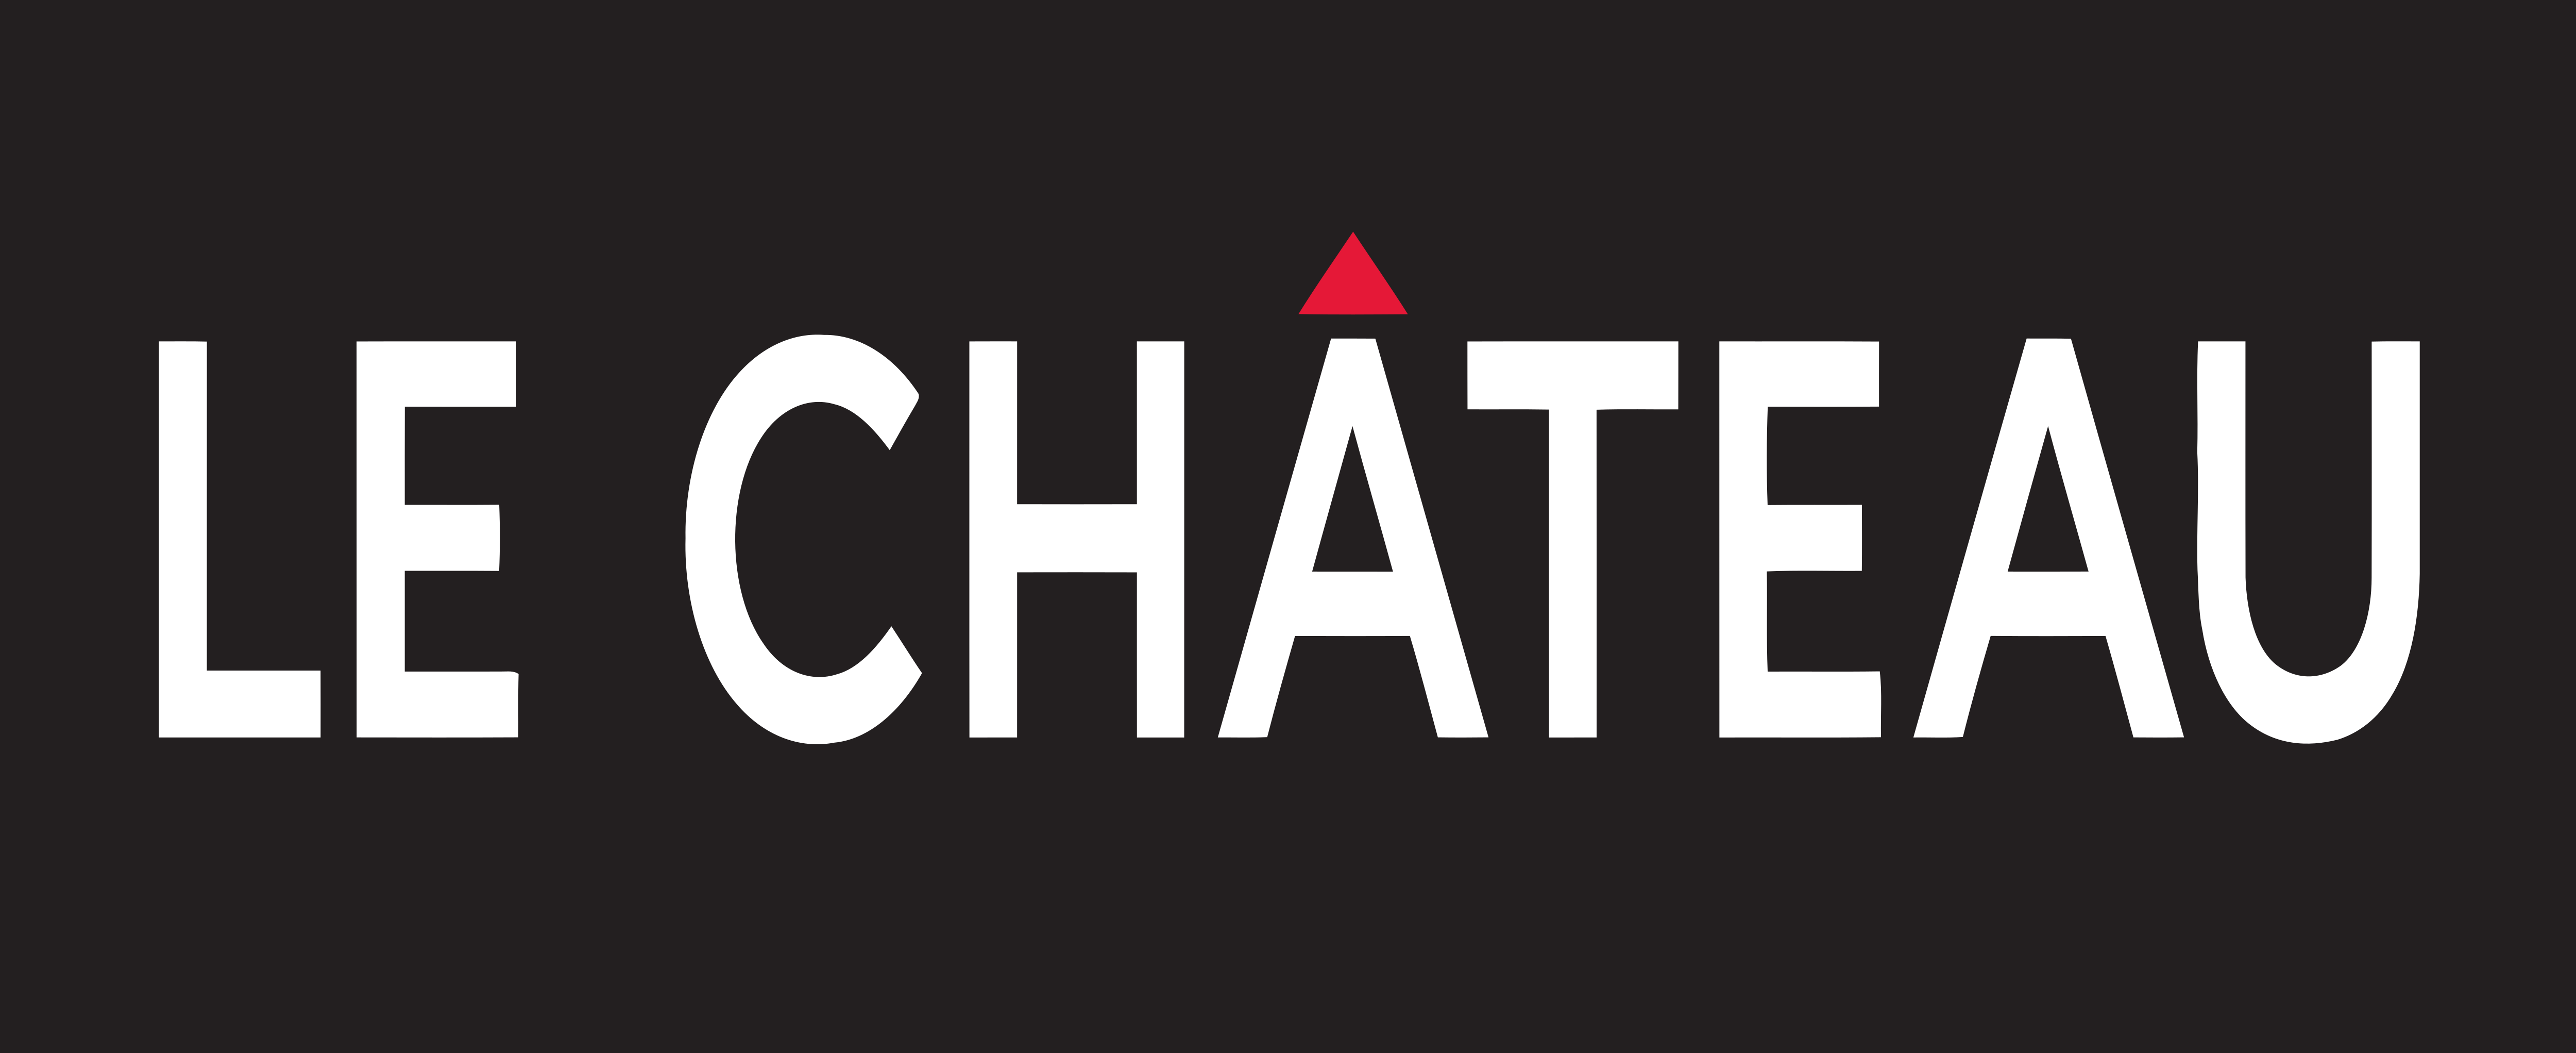 Le Château – Logos Download